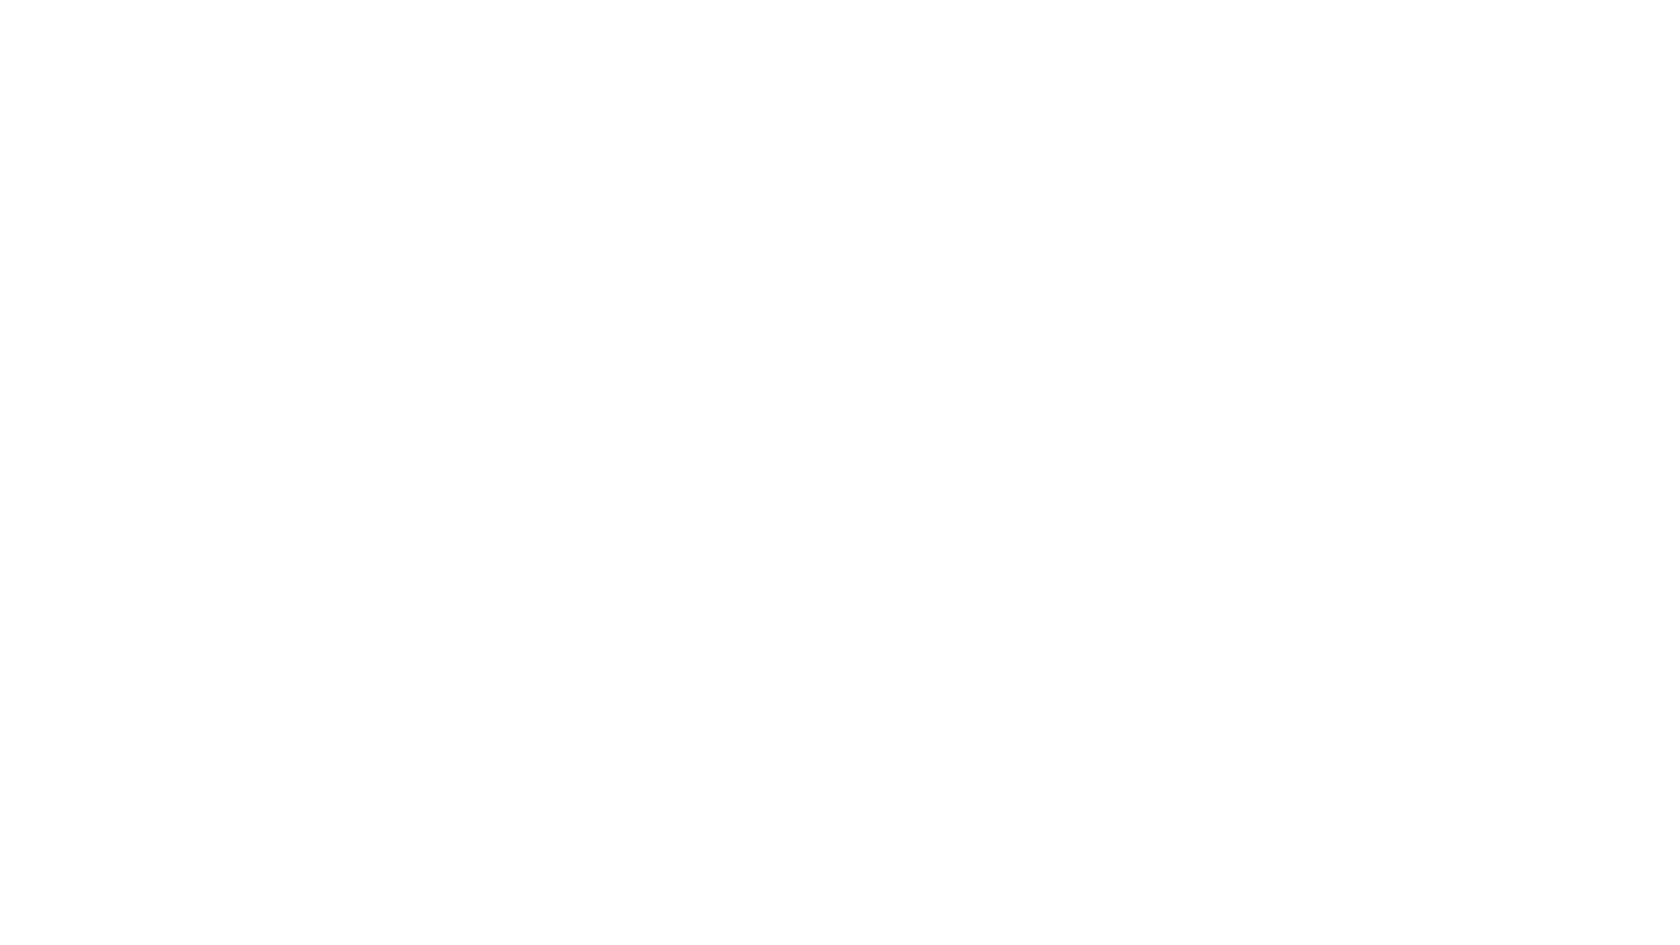 Скриншот исполнения «Вальса» Д. Шостаковича на дистанционном фестивале «Musichorales-2021 en ligne» (июль 2021 г.)